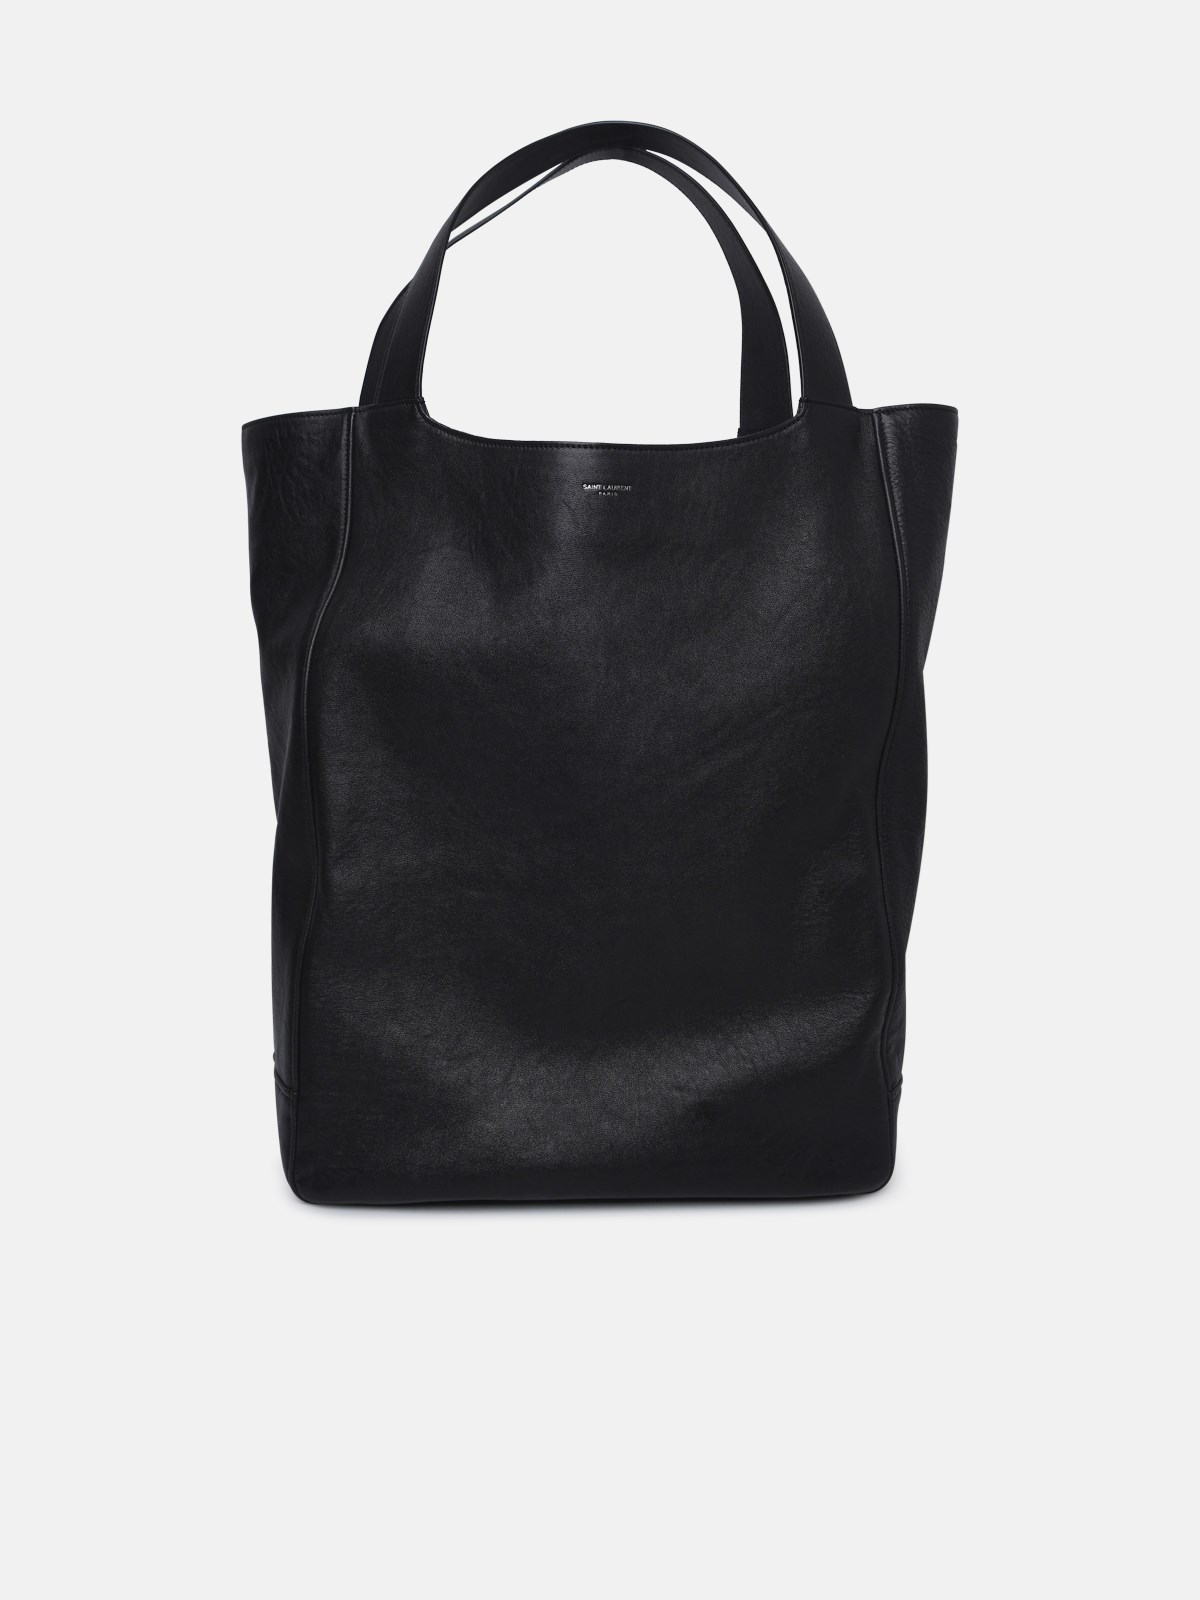 Saint Laurent Black Leather Bag